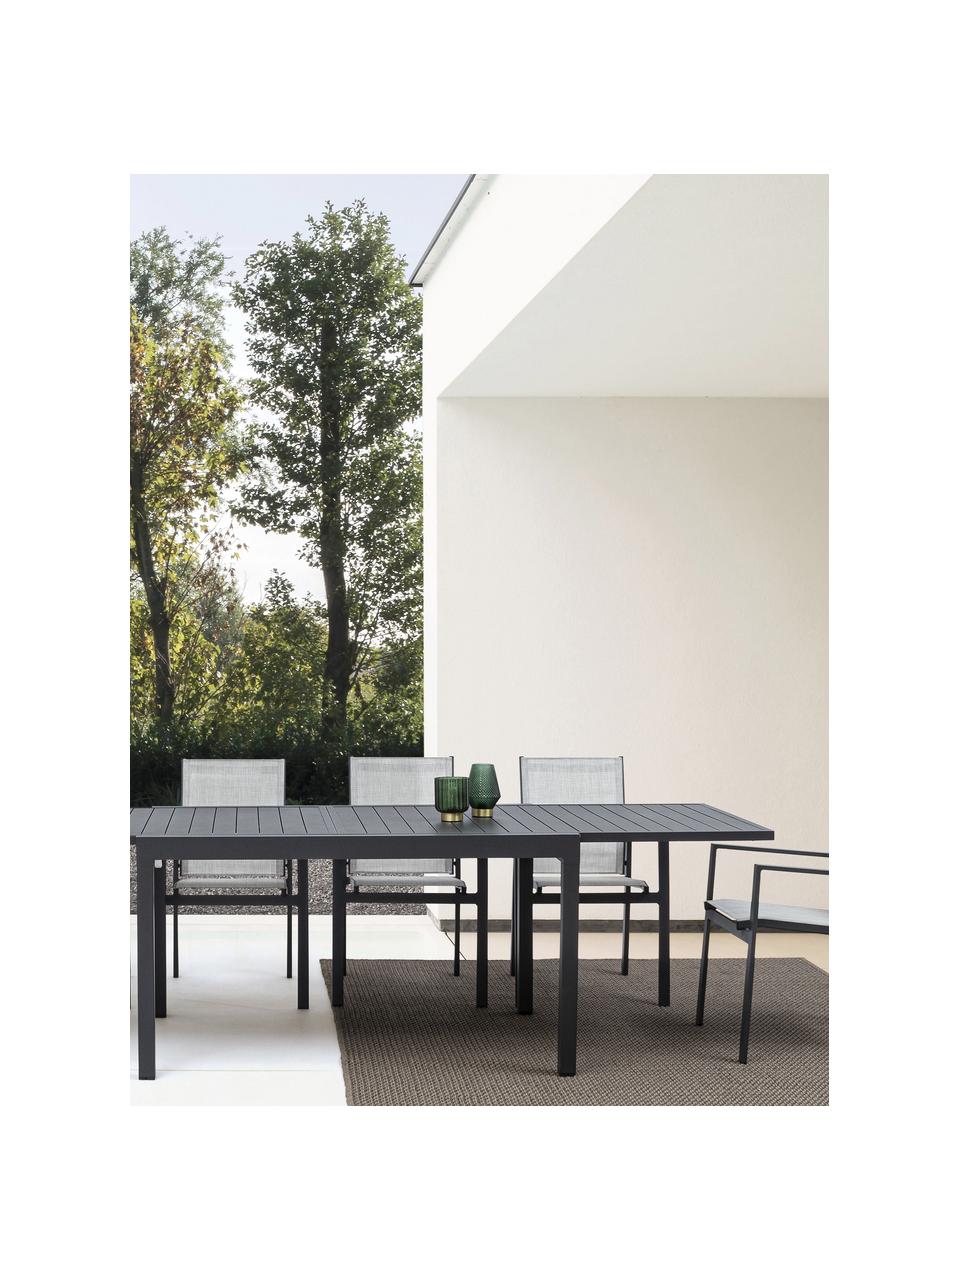 Stół ogrodowy Pelagius, 135 - 270 x 90 cm, Aluminium malowane proszkowo, Antracytowy, S 135/270 x G 90 cm